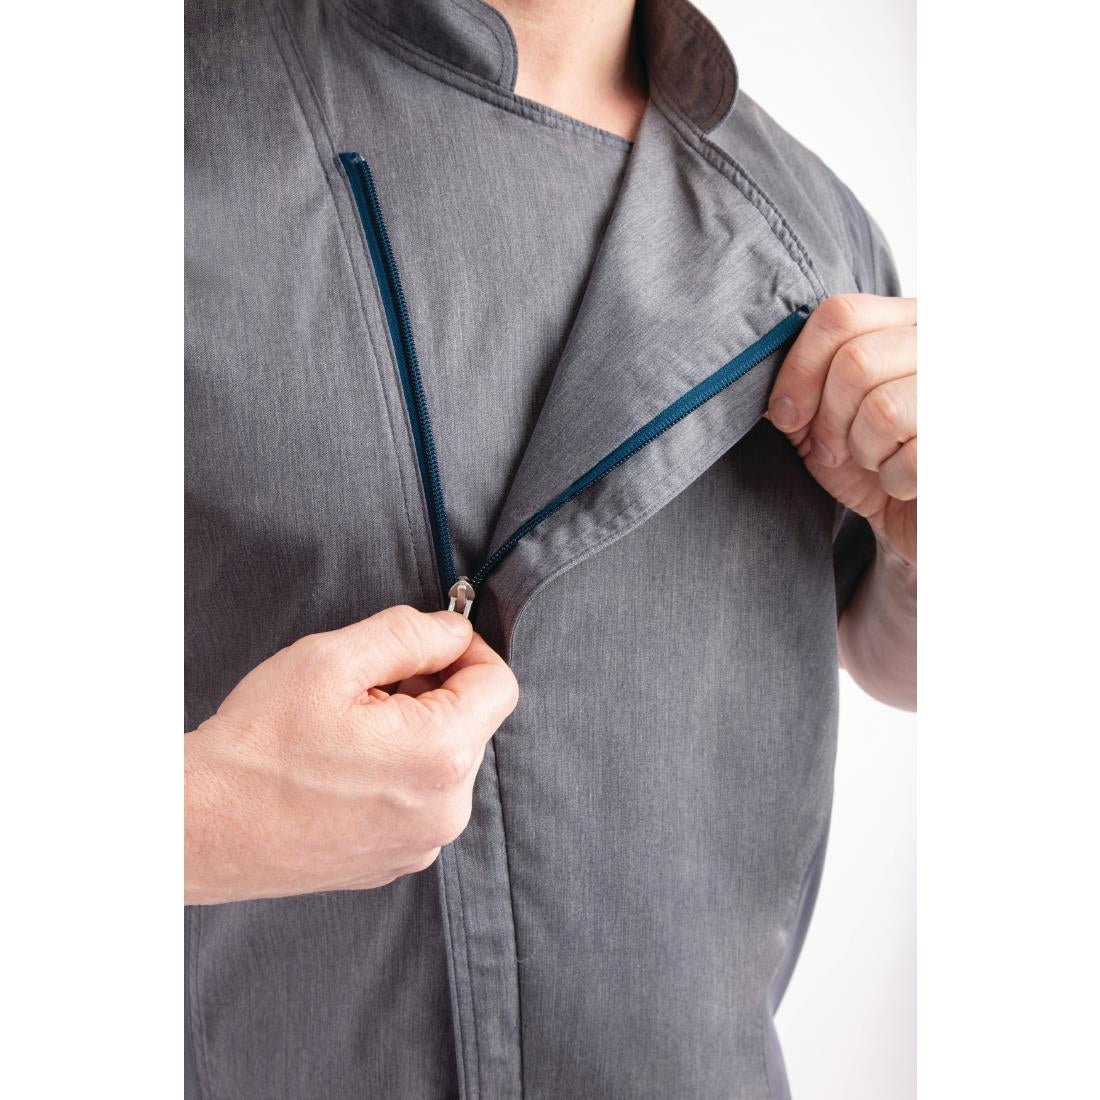 BB267-XL Chef Works Unisex Springfield Lightweight Short Sleeve Zipper Coat Ink Blue Size XL